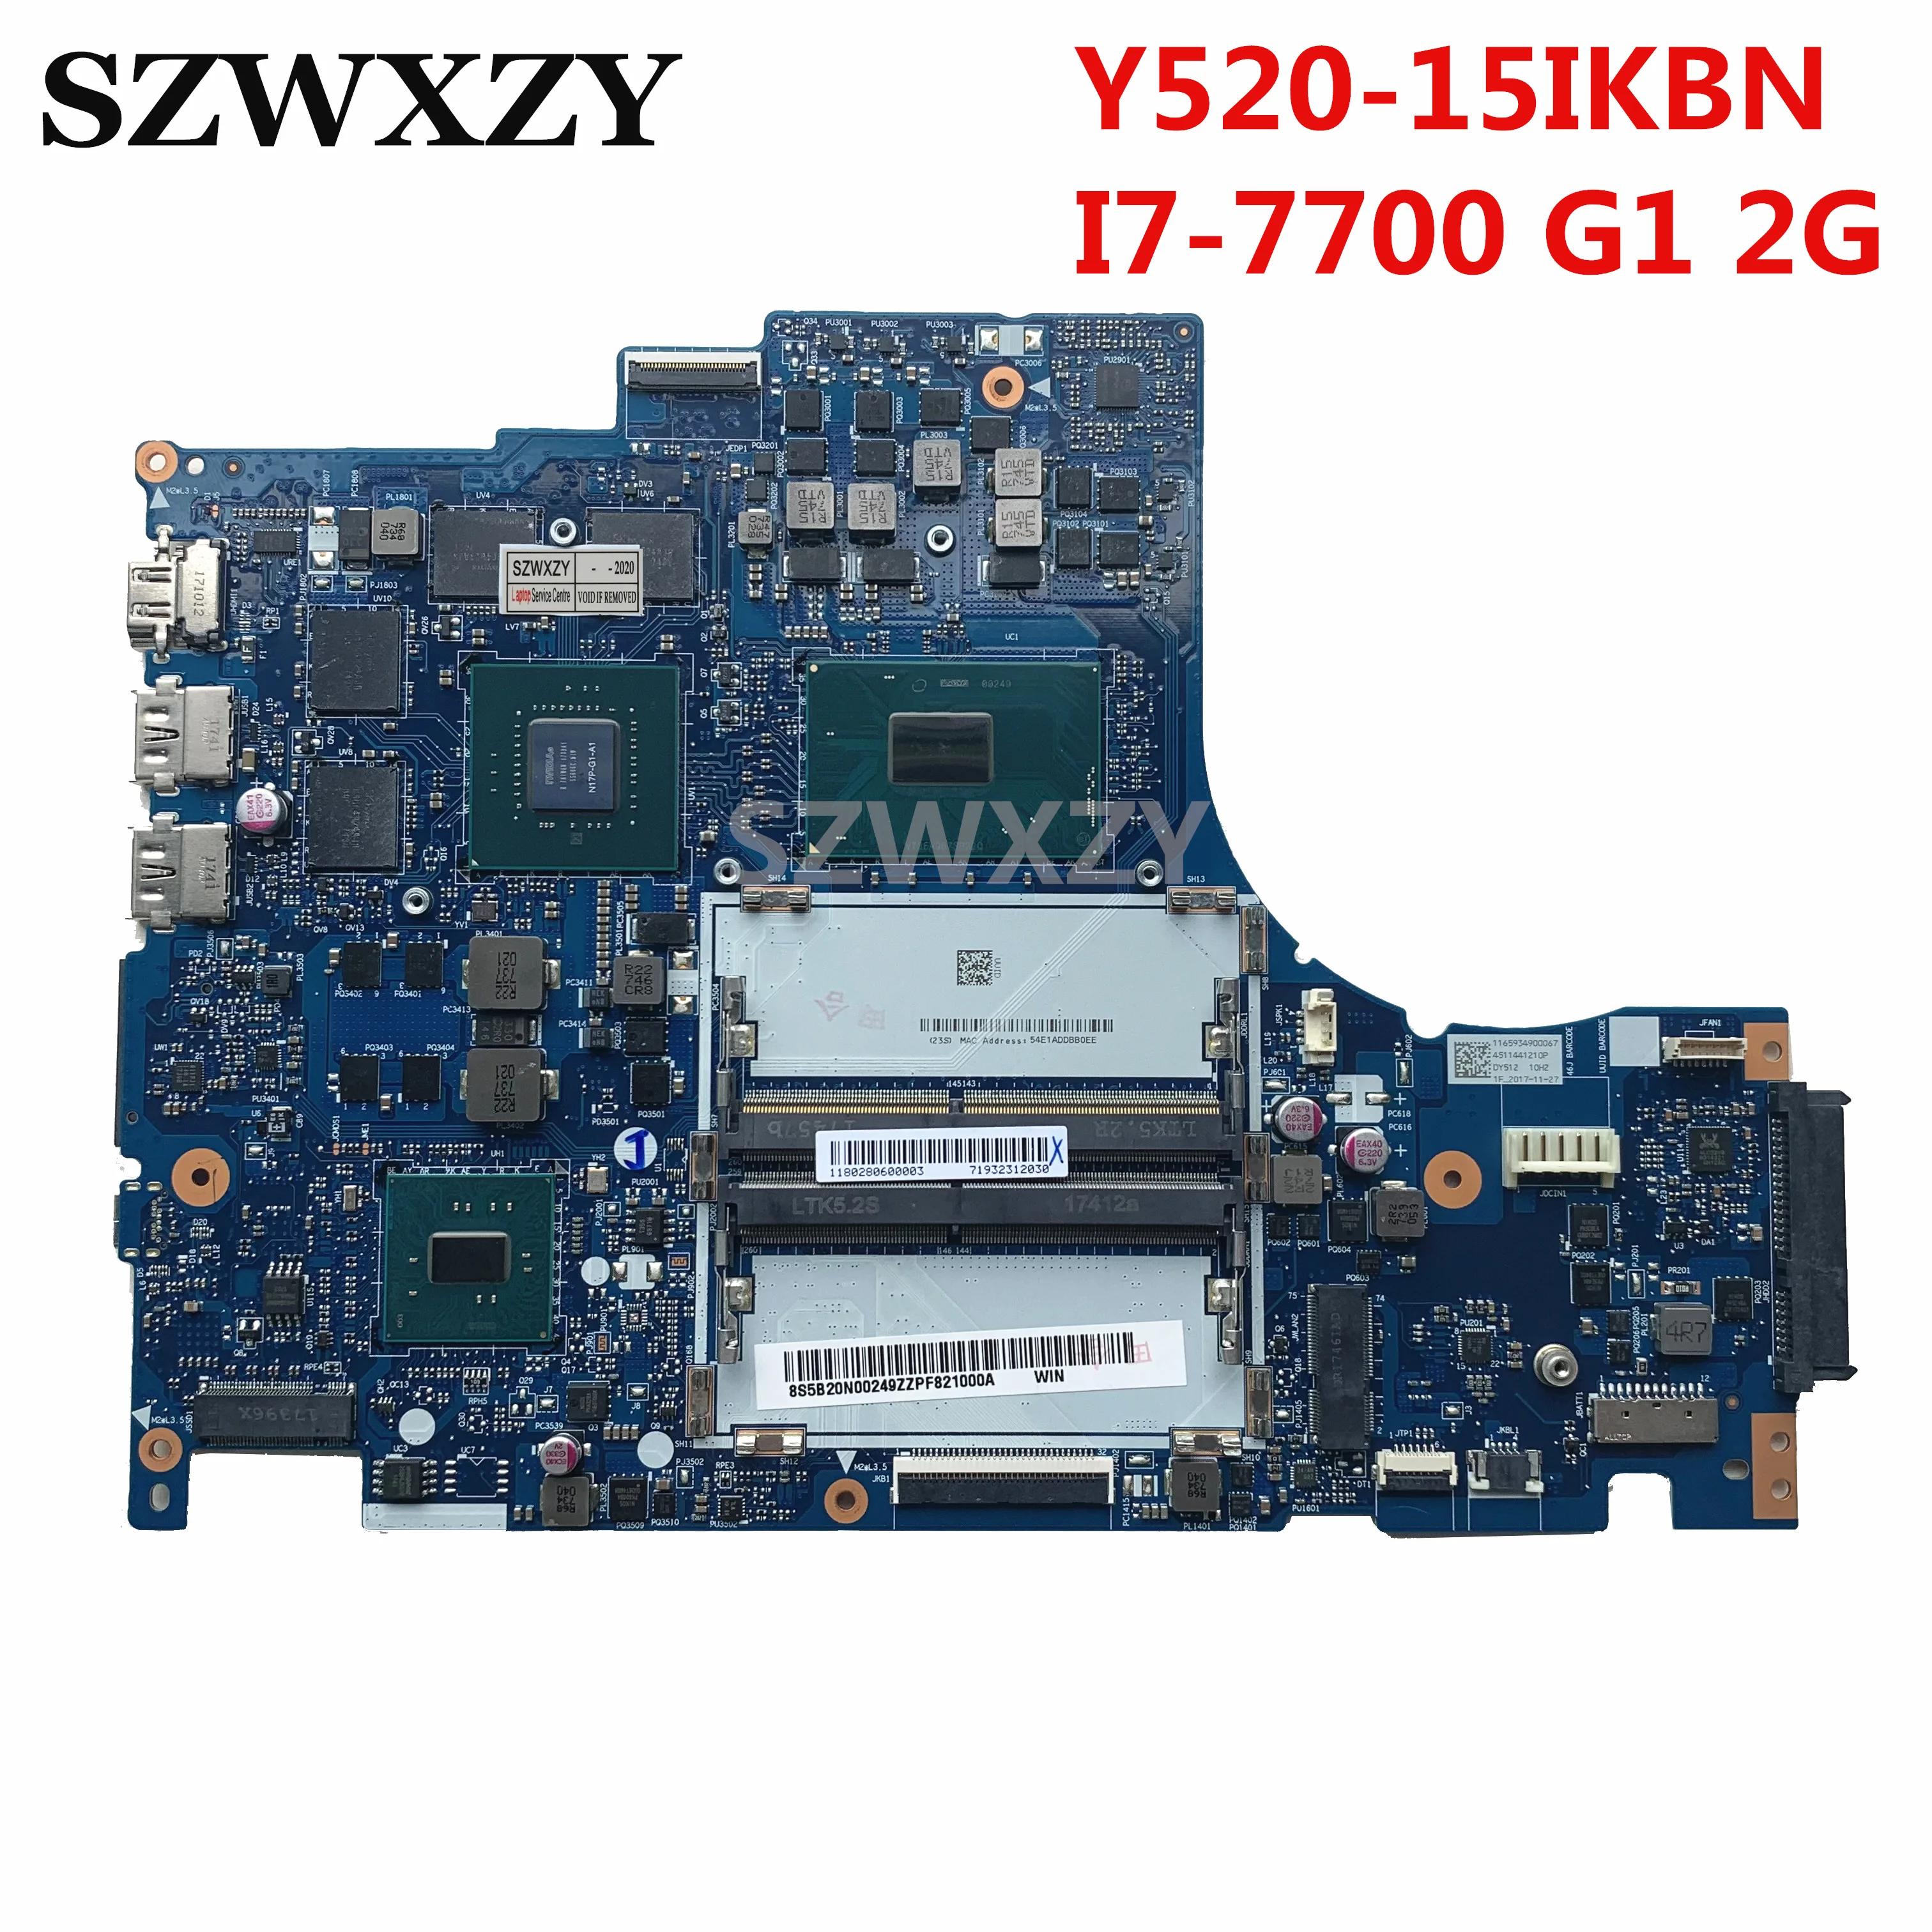    Y520 Y520-15IKBN Ʈ , 5B20N00249 DY512 NM-B191, i7-7700HQ CPU GTX 1050Ti 2GB